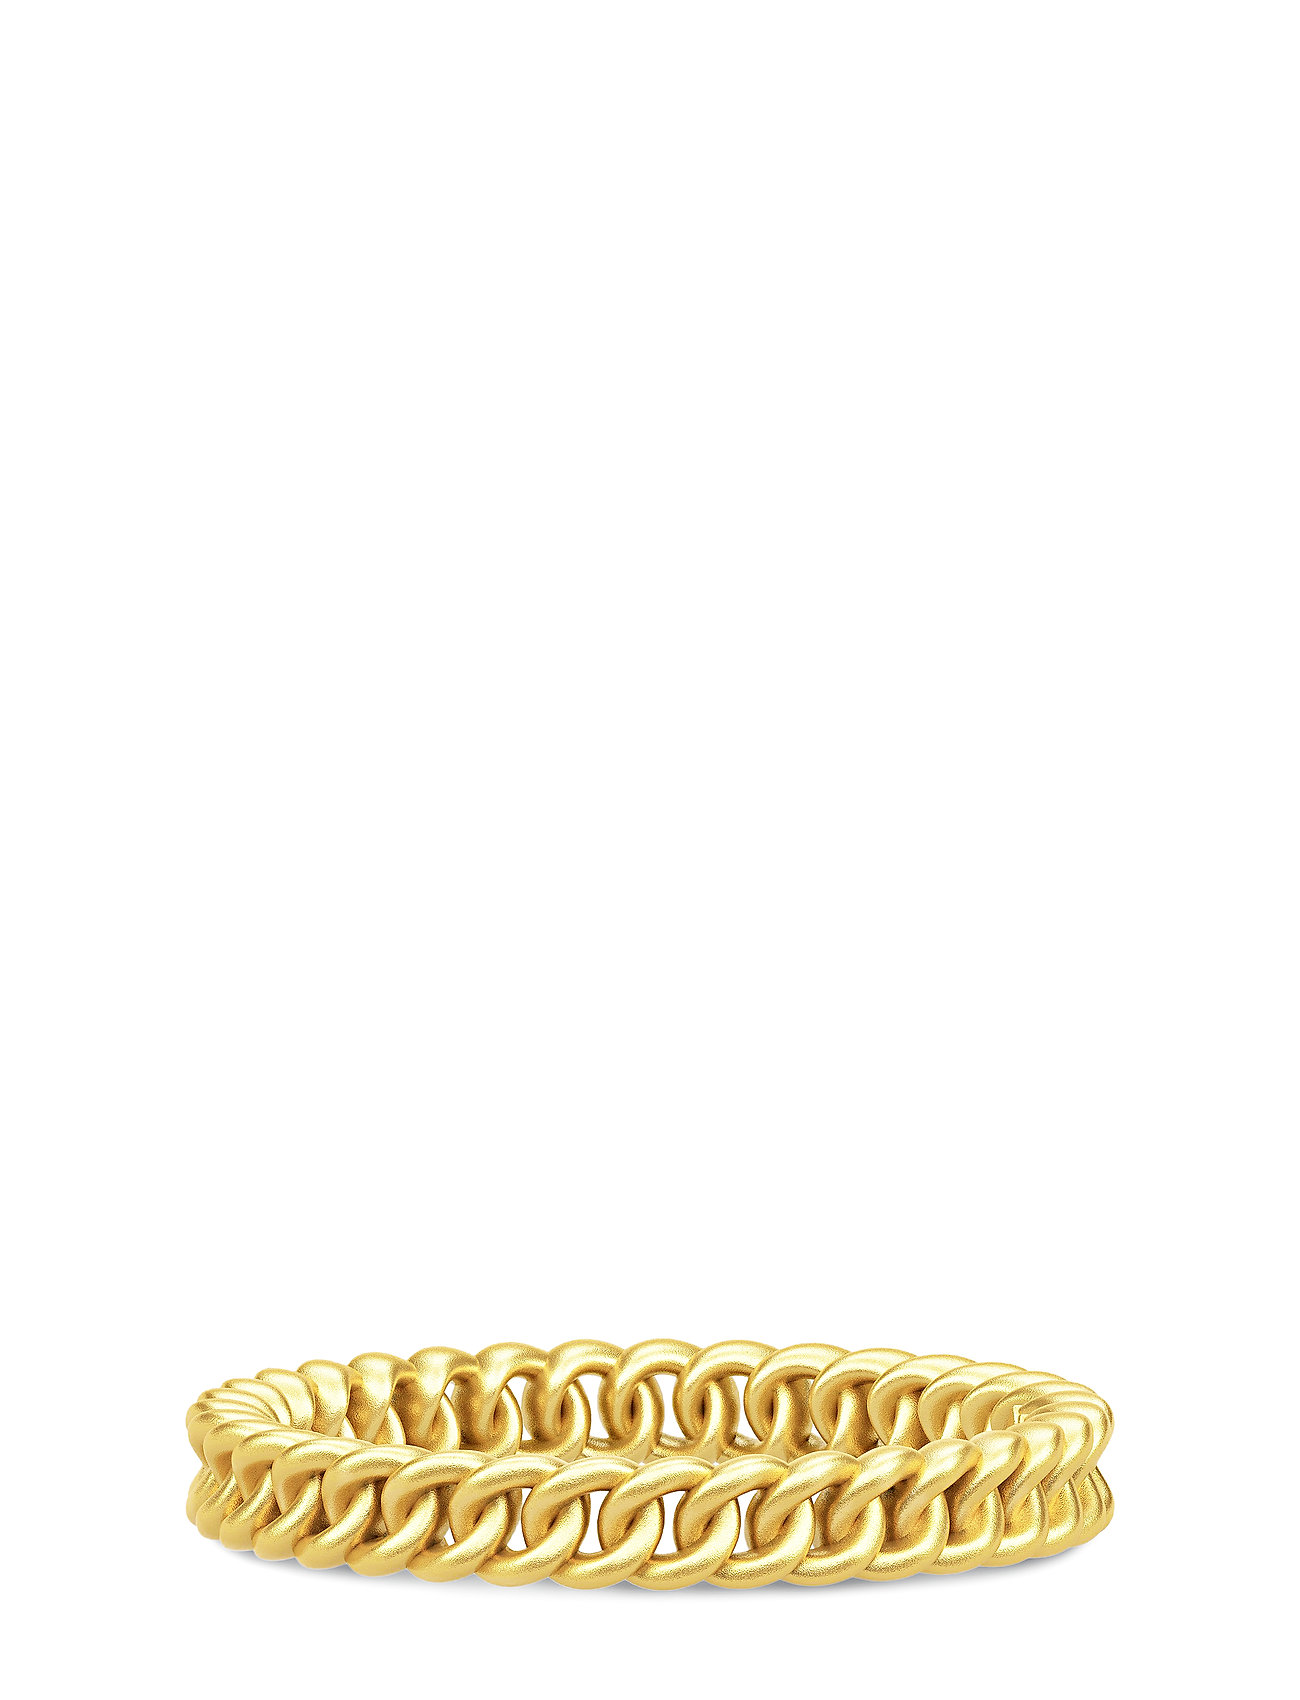 status Citron Forkludret Guld Julie Sandlau Chain Ring Small 52 - Gold Ring Smykker Guld Julie  Sandlau ringe for dame - Pashion.dk